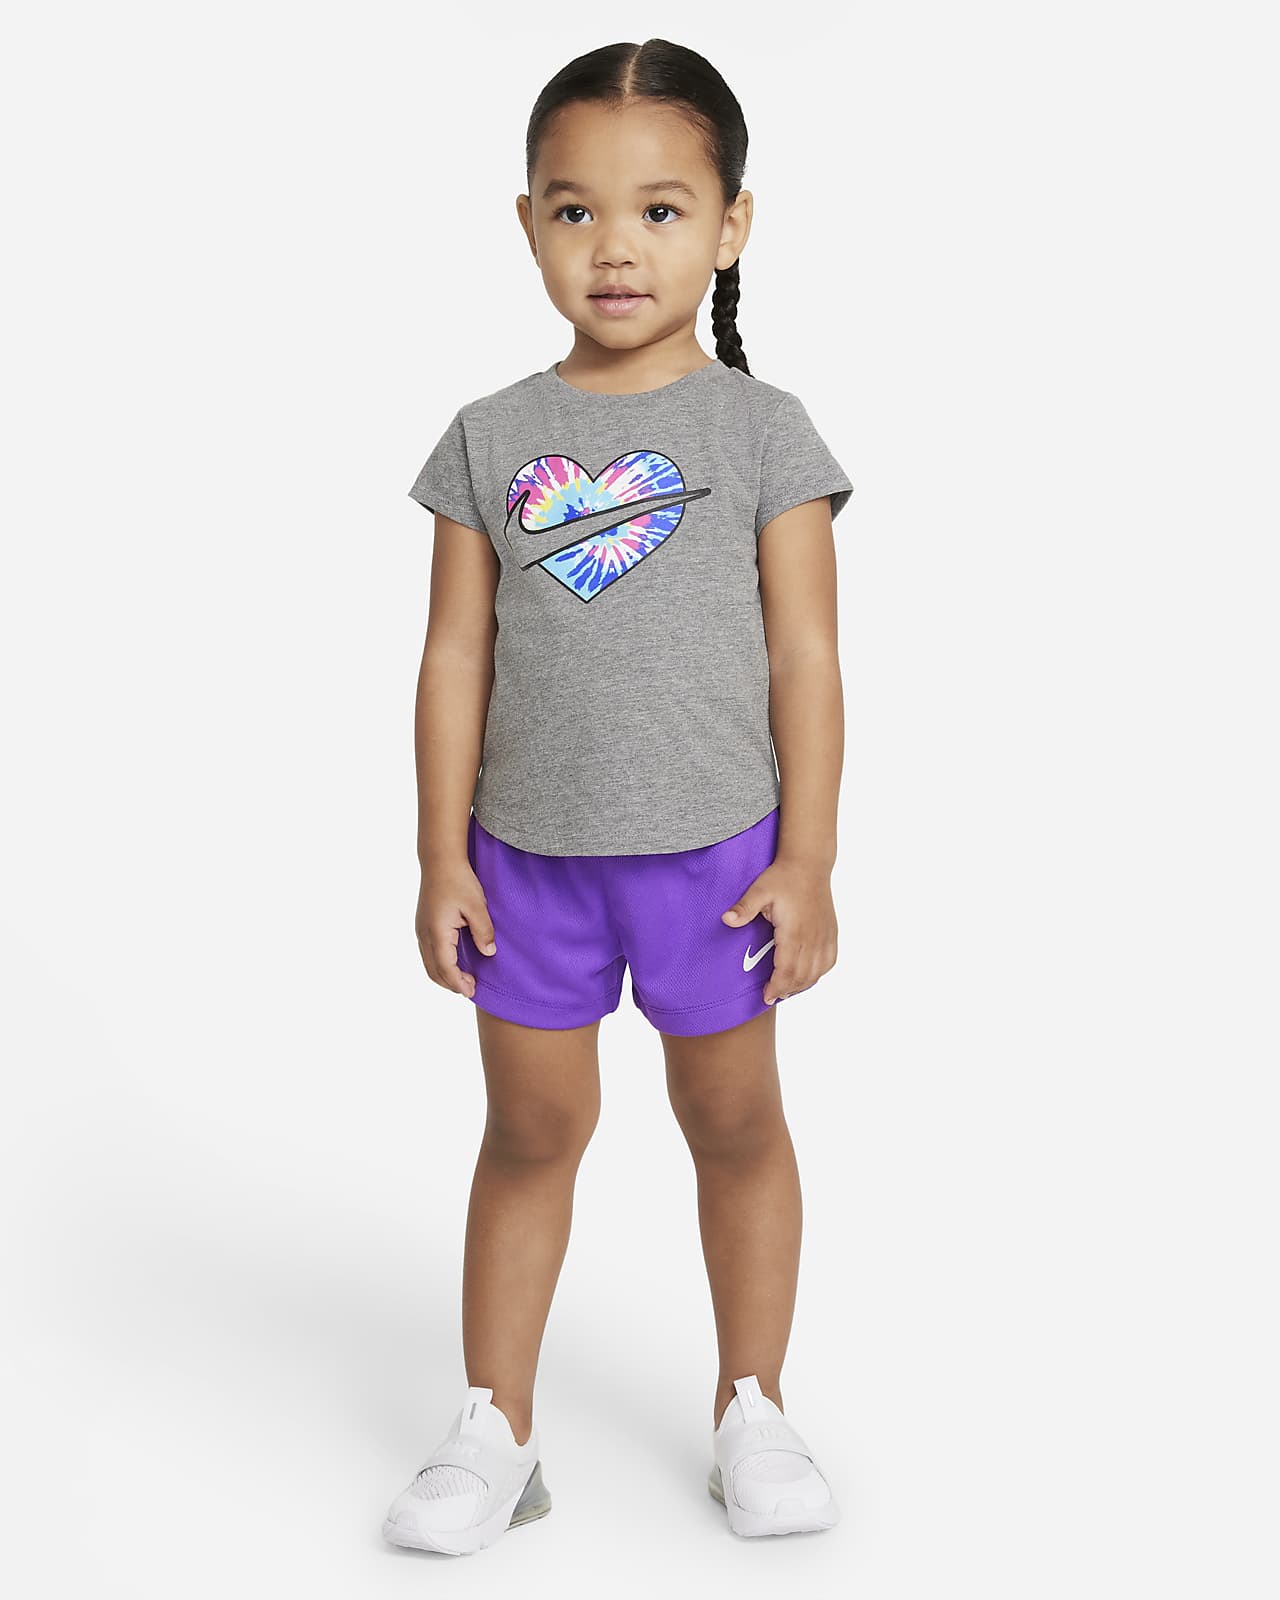 Nike Toddler Tie-Dye T-Shirt and Shorts Set